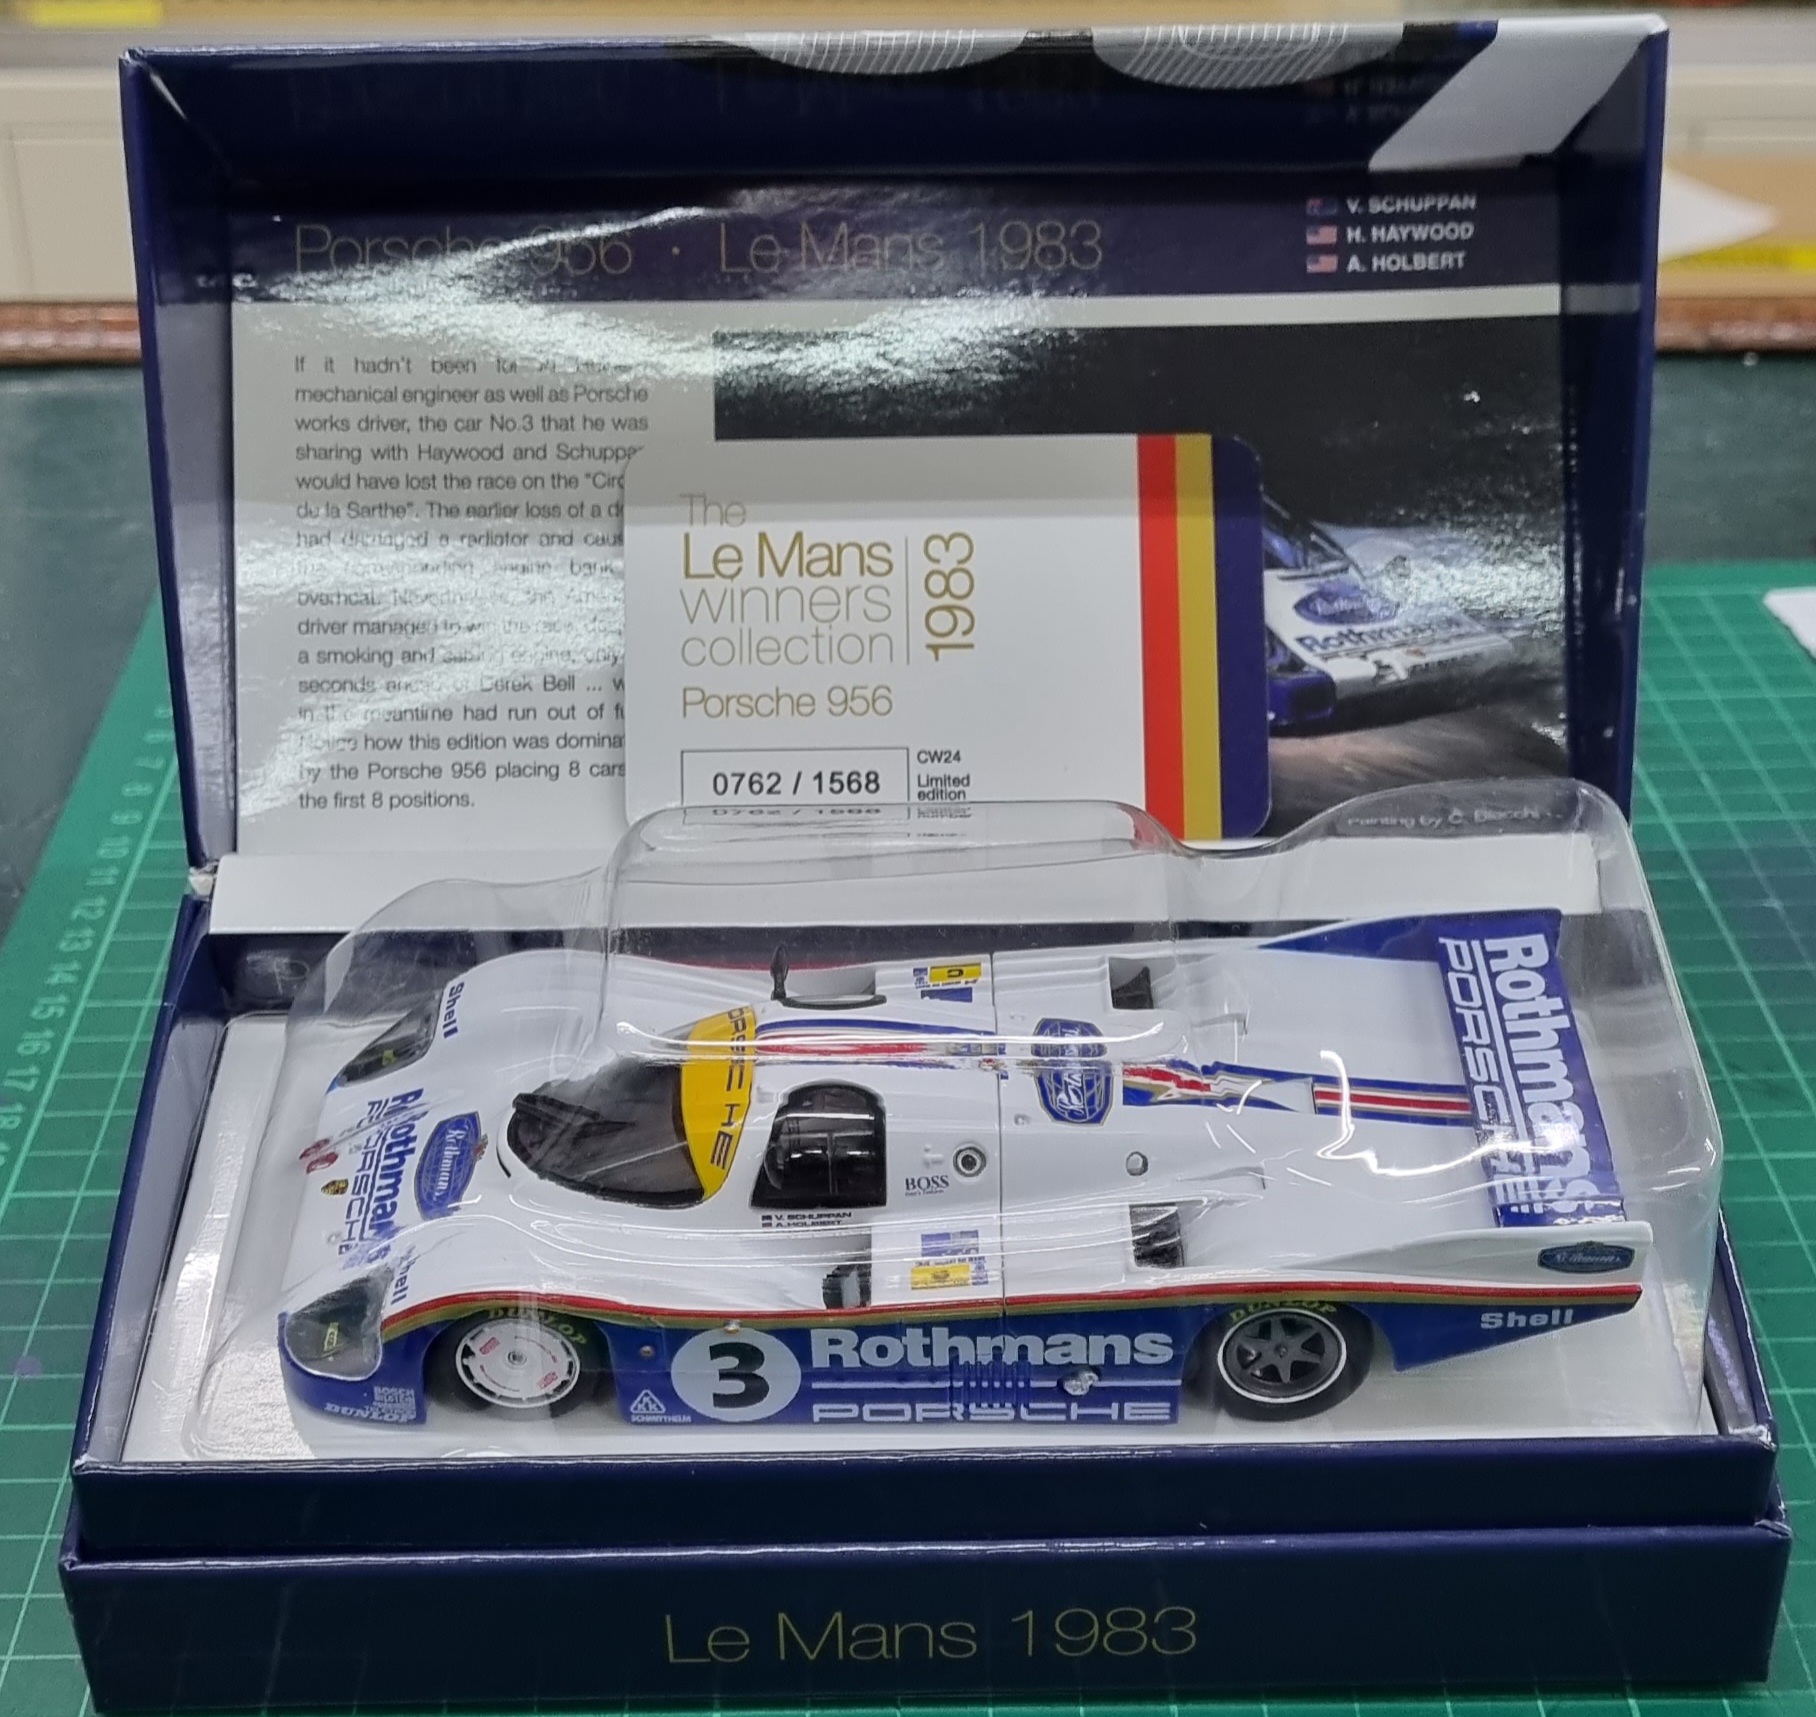 Slot.it CW24 Porsche 956C LH n.3 24h Le Mans Winner 1983